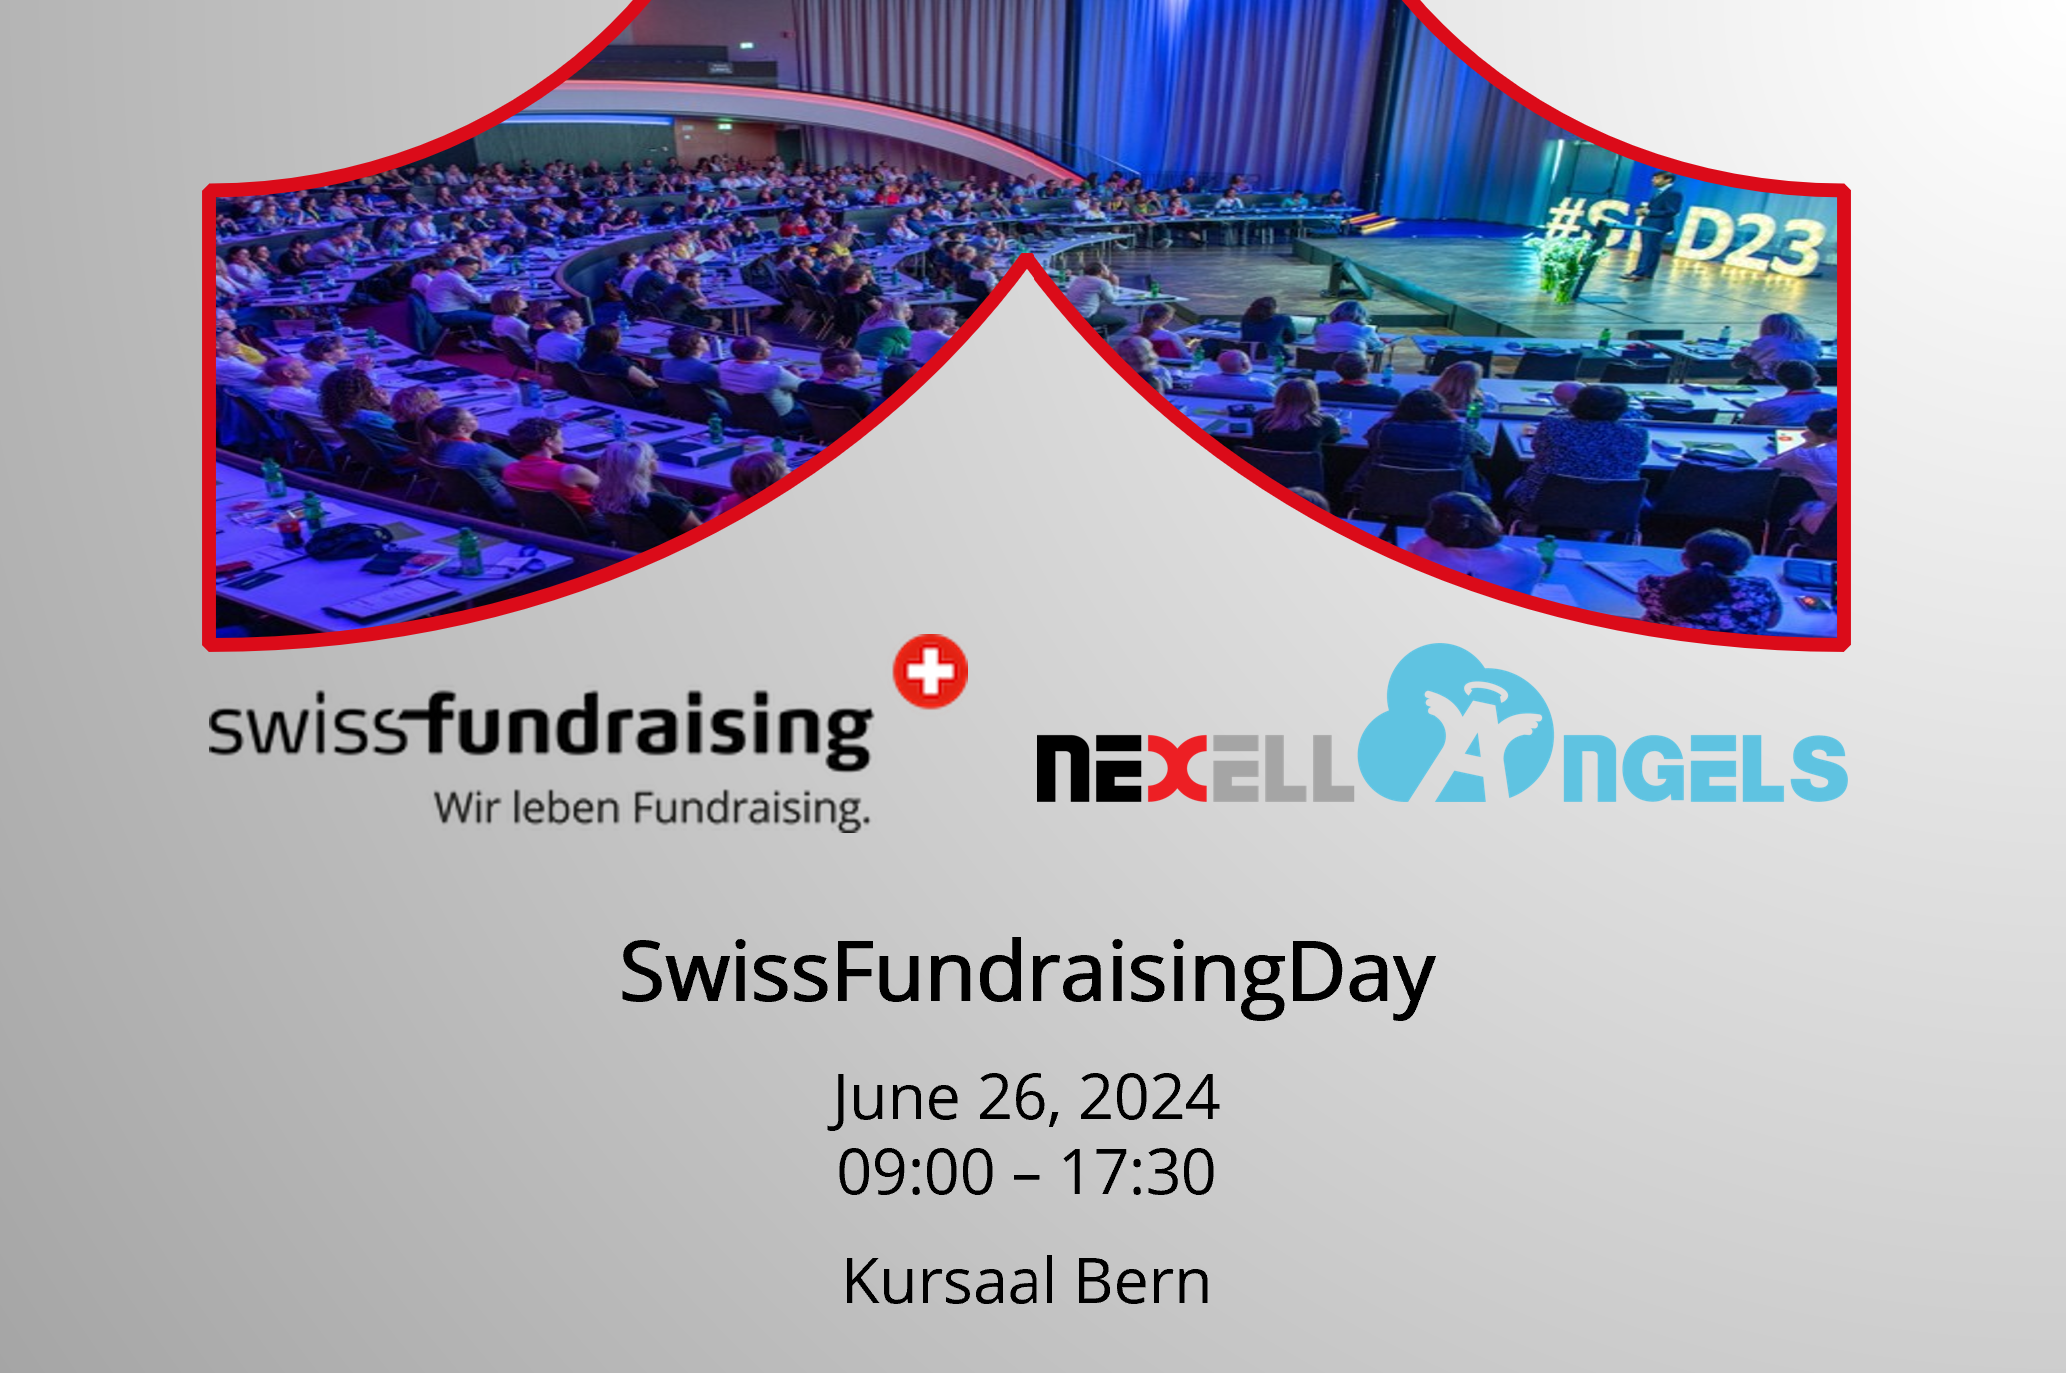 Nexell at the SwissfundraisingDay 2022